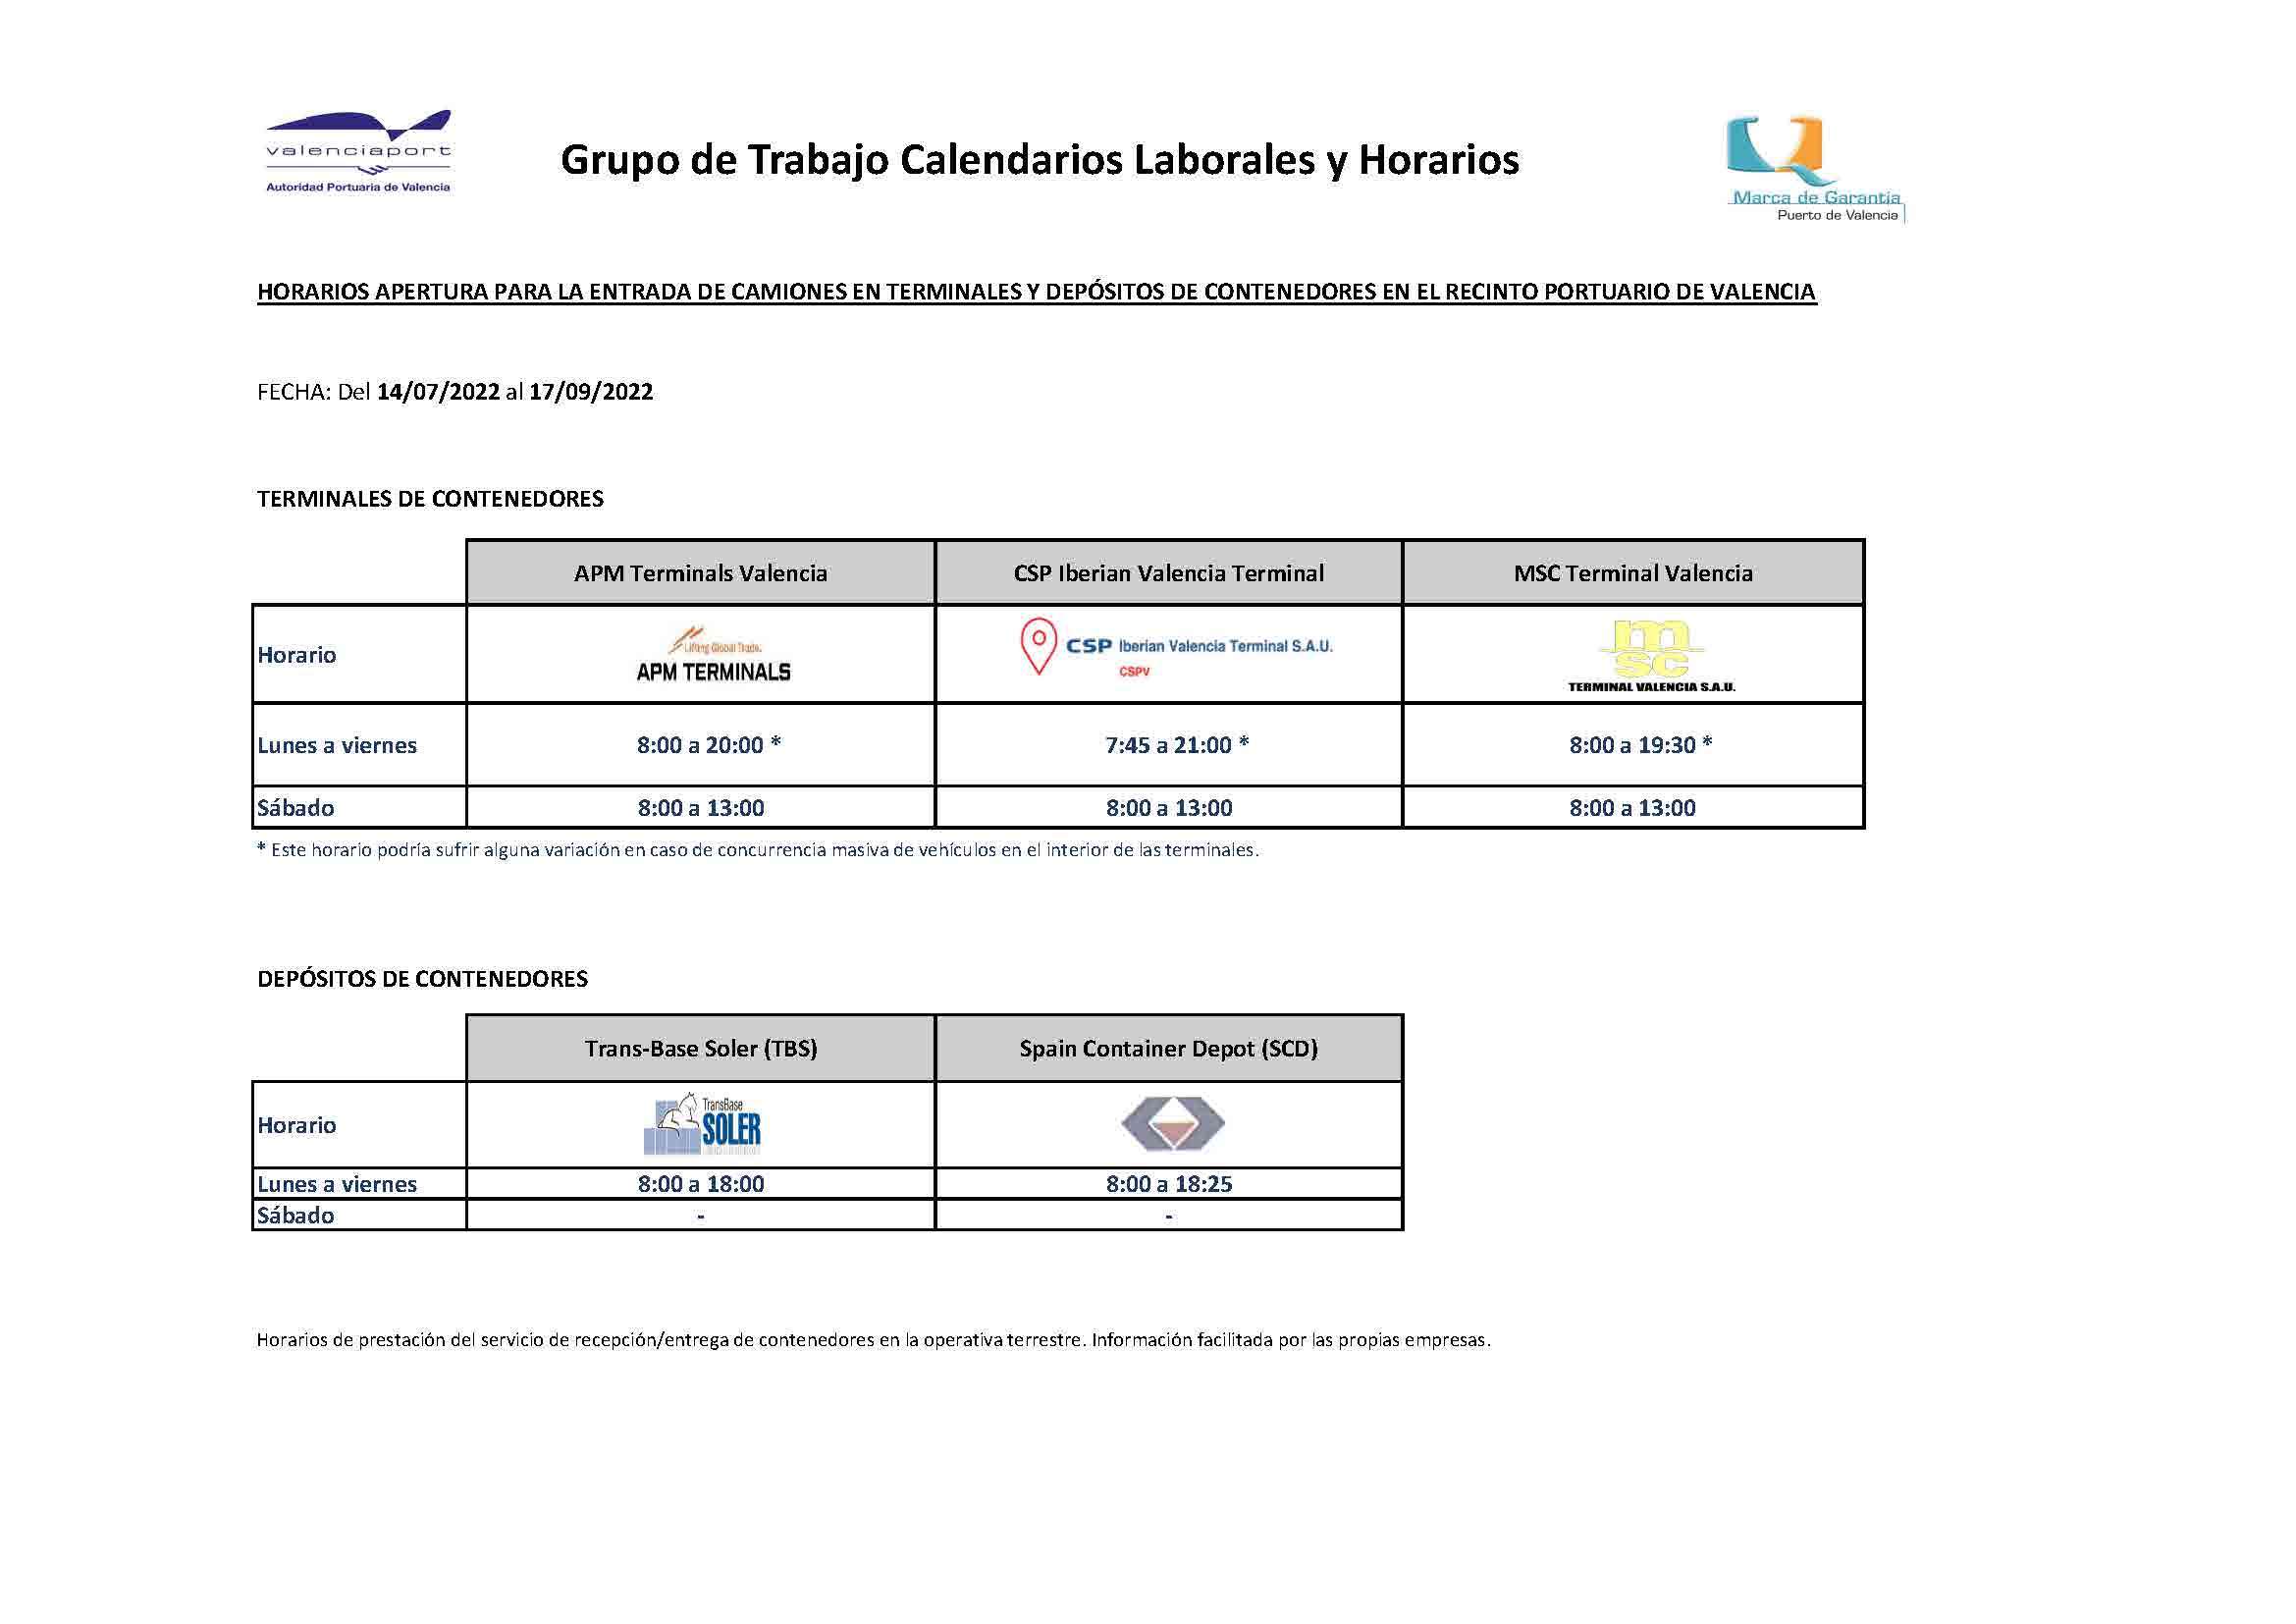 Horarios entrega/recepción en la operativa terrestre de terminales y depósitos de contenedores puerto de Valencia